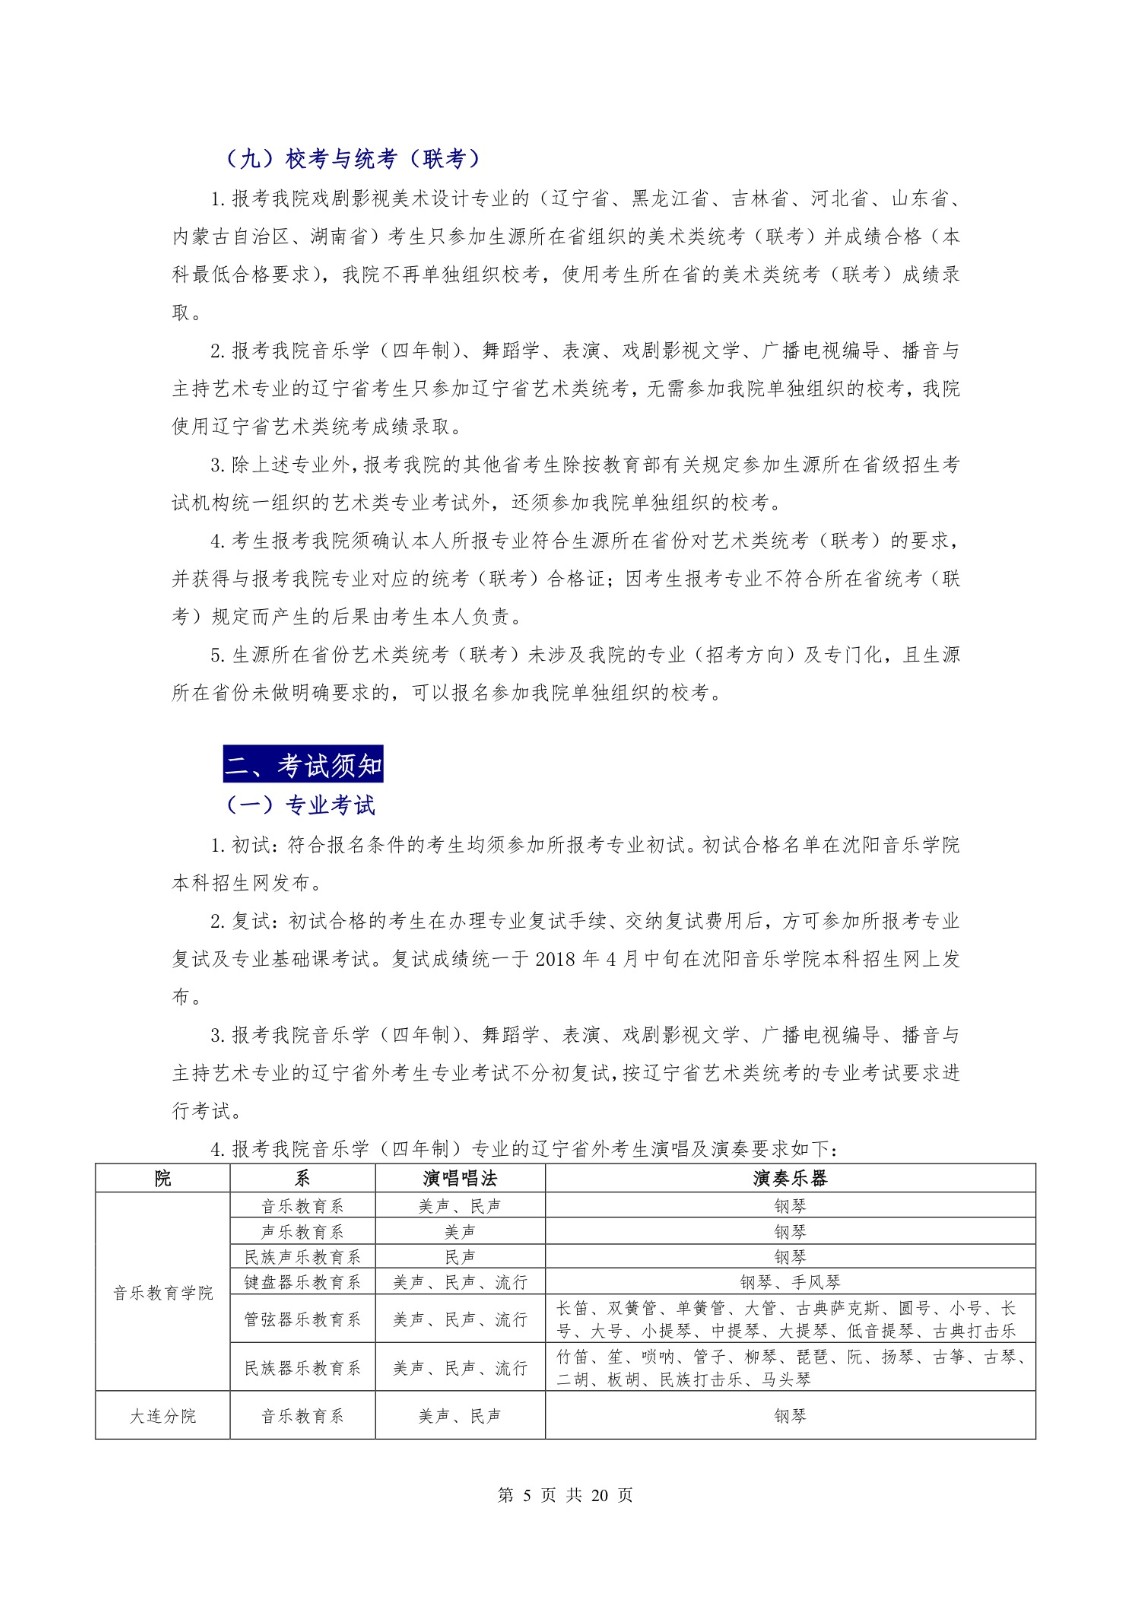 2018年沈阳音乐学院本科招生简章 -page5.jpeg